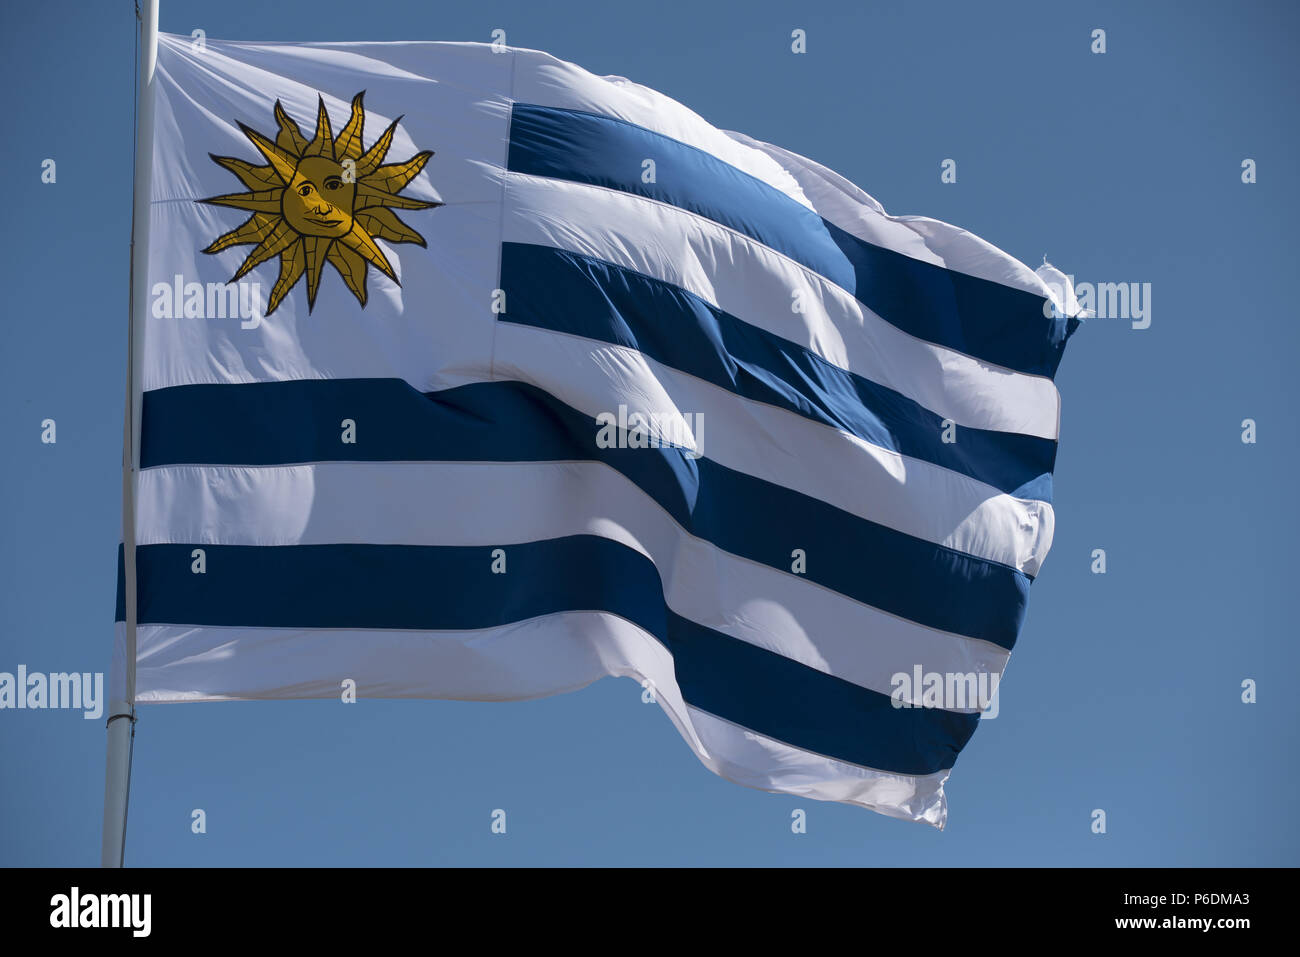 Uruguay bandera del país ondeando al viento sobre fondo de cielo azul. Emblema nacional uruguayo de América del Sur. Foto de stock